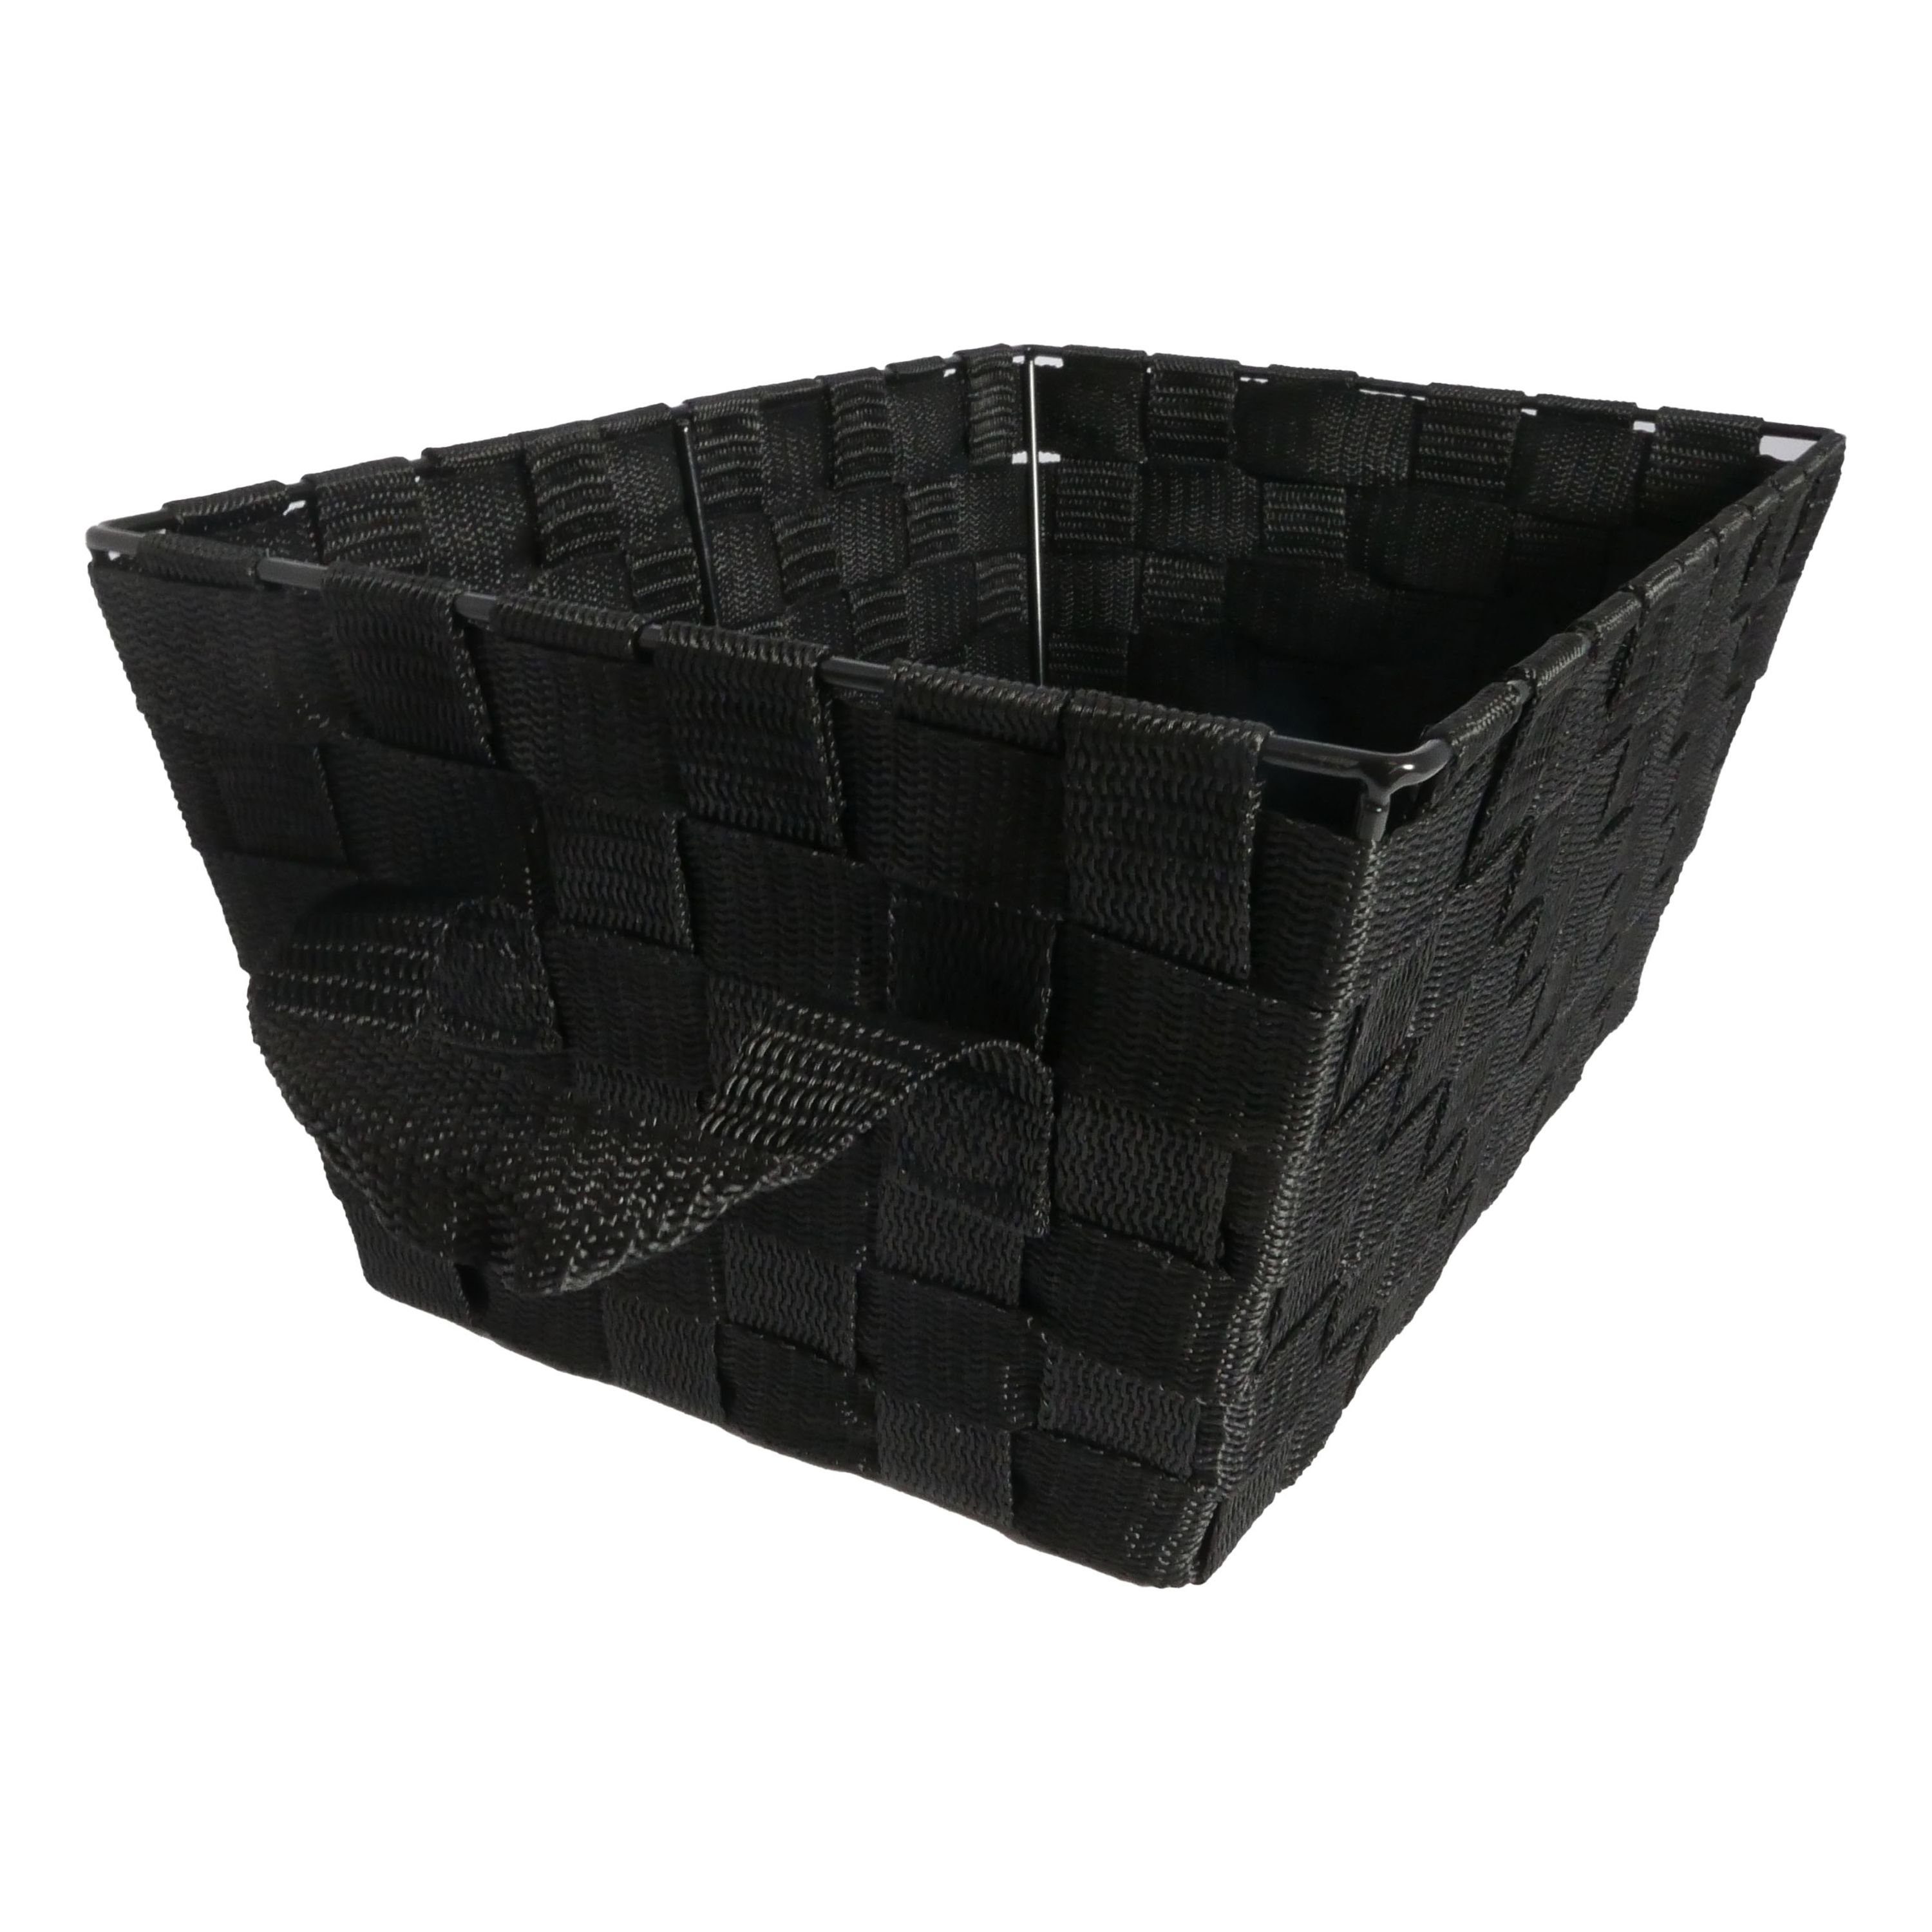 B&S Regalkorb Regalkorb Geflecht schwarz Ordnungsbox rechteckig 25 x 35 cm